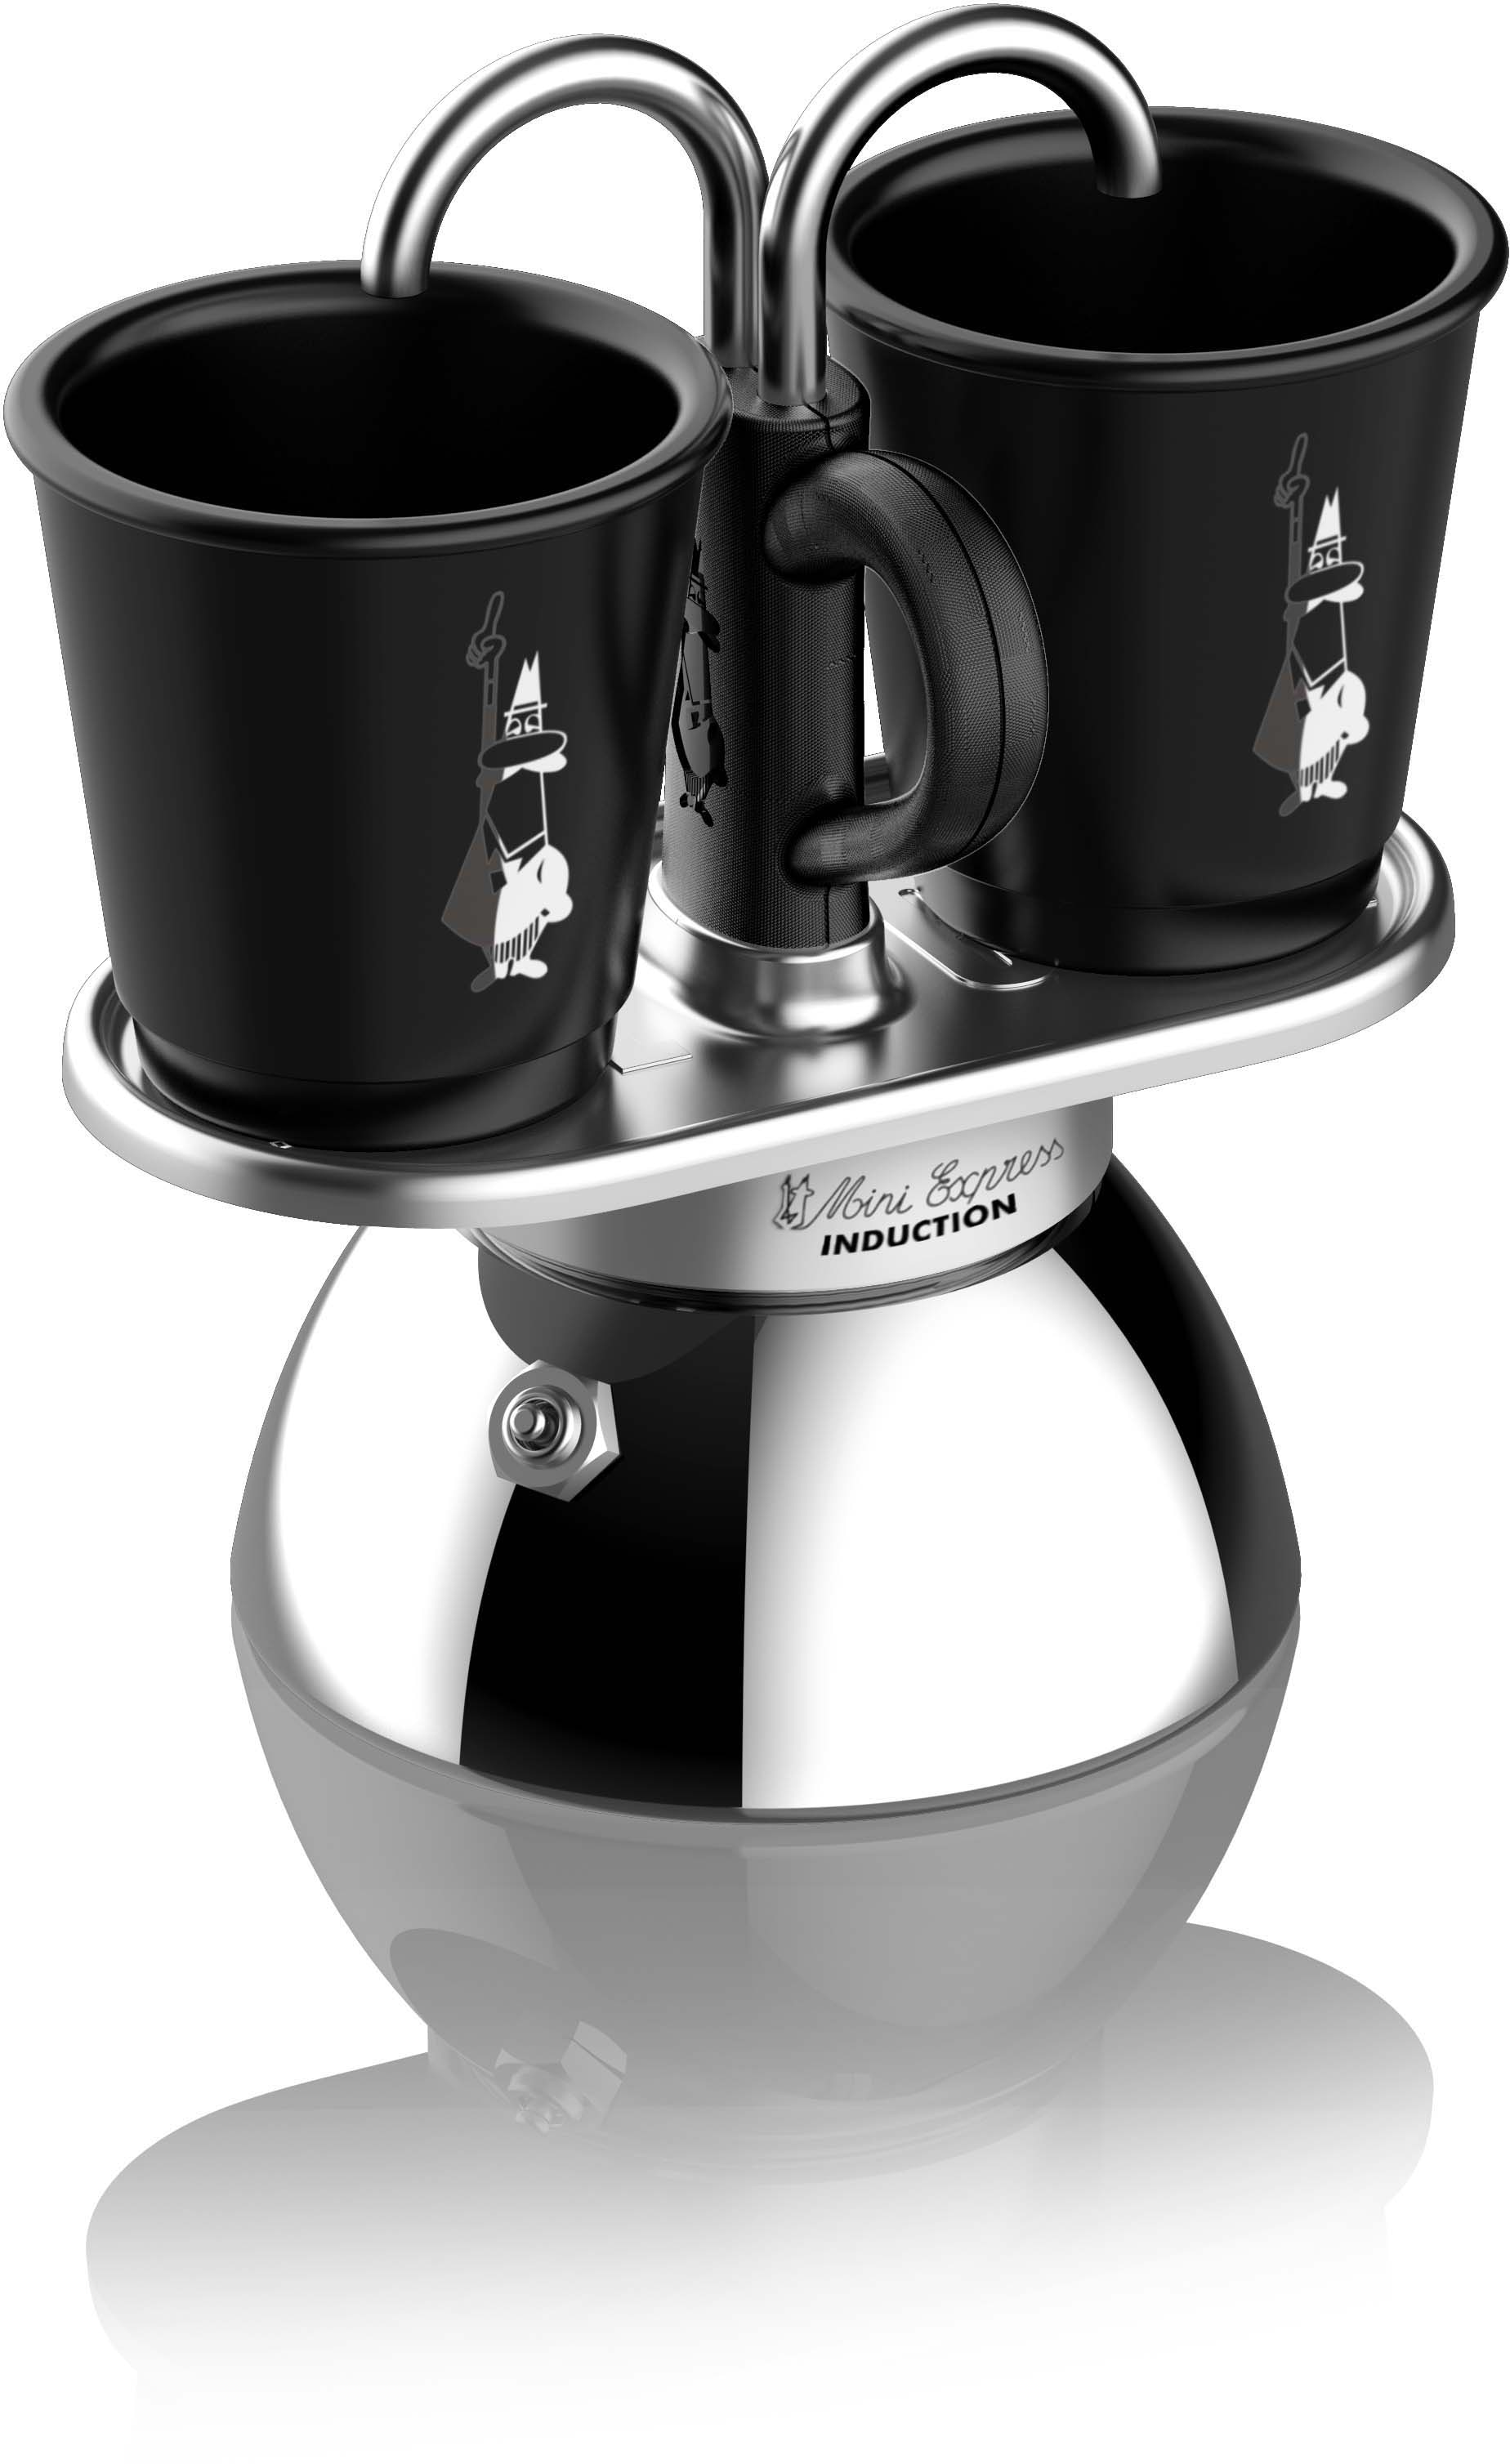 BIALETTI Espressokocher »Mini Induktion«, zwei Espressi gleichzeitig zubereiten, 90 ml, Zwei-Schicht-Edelstahl